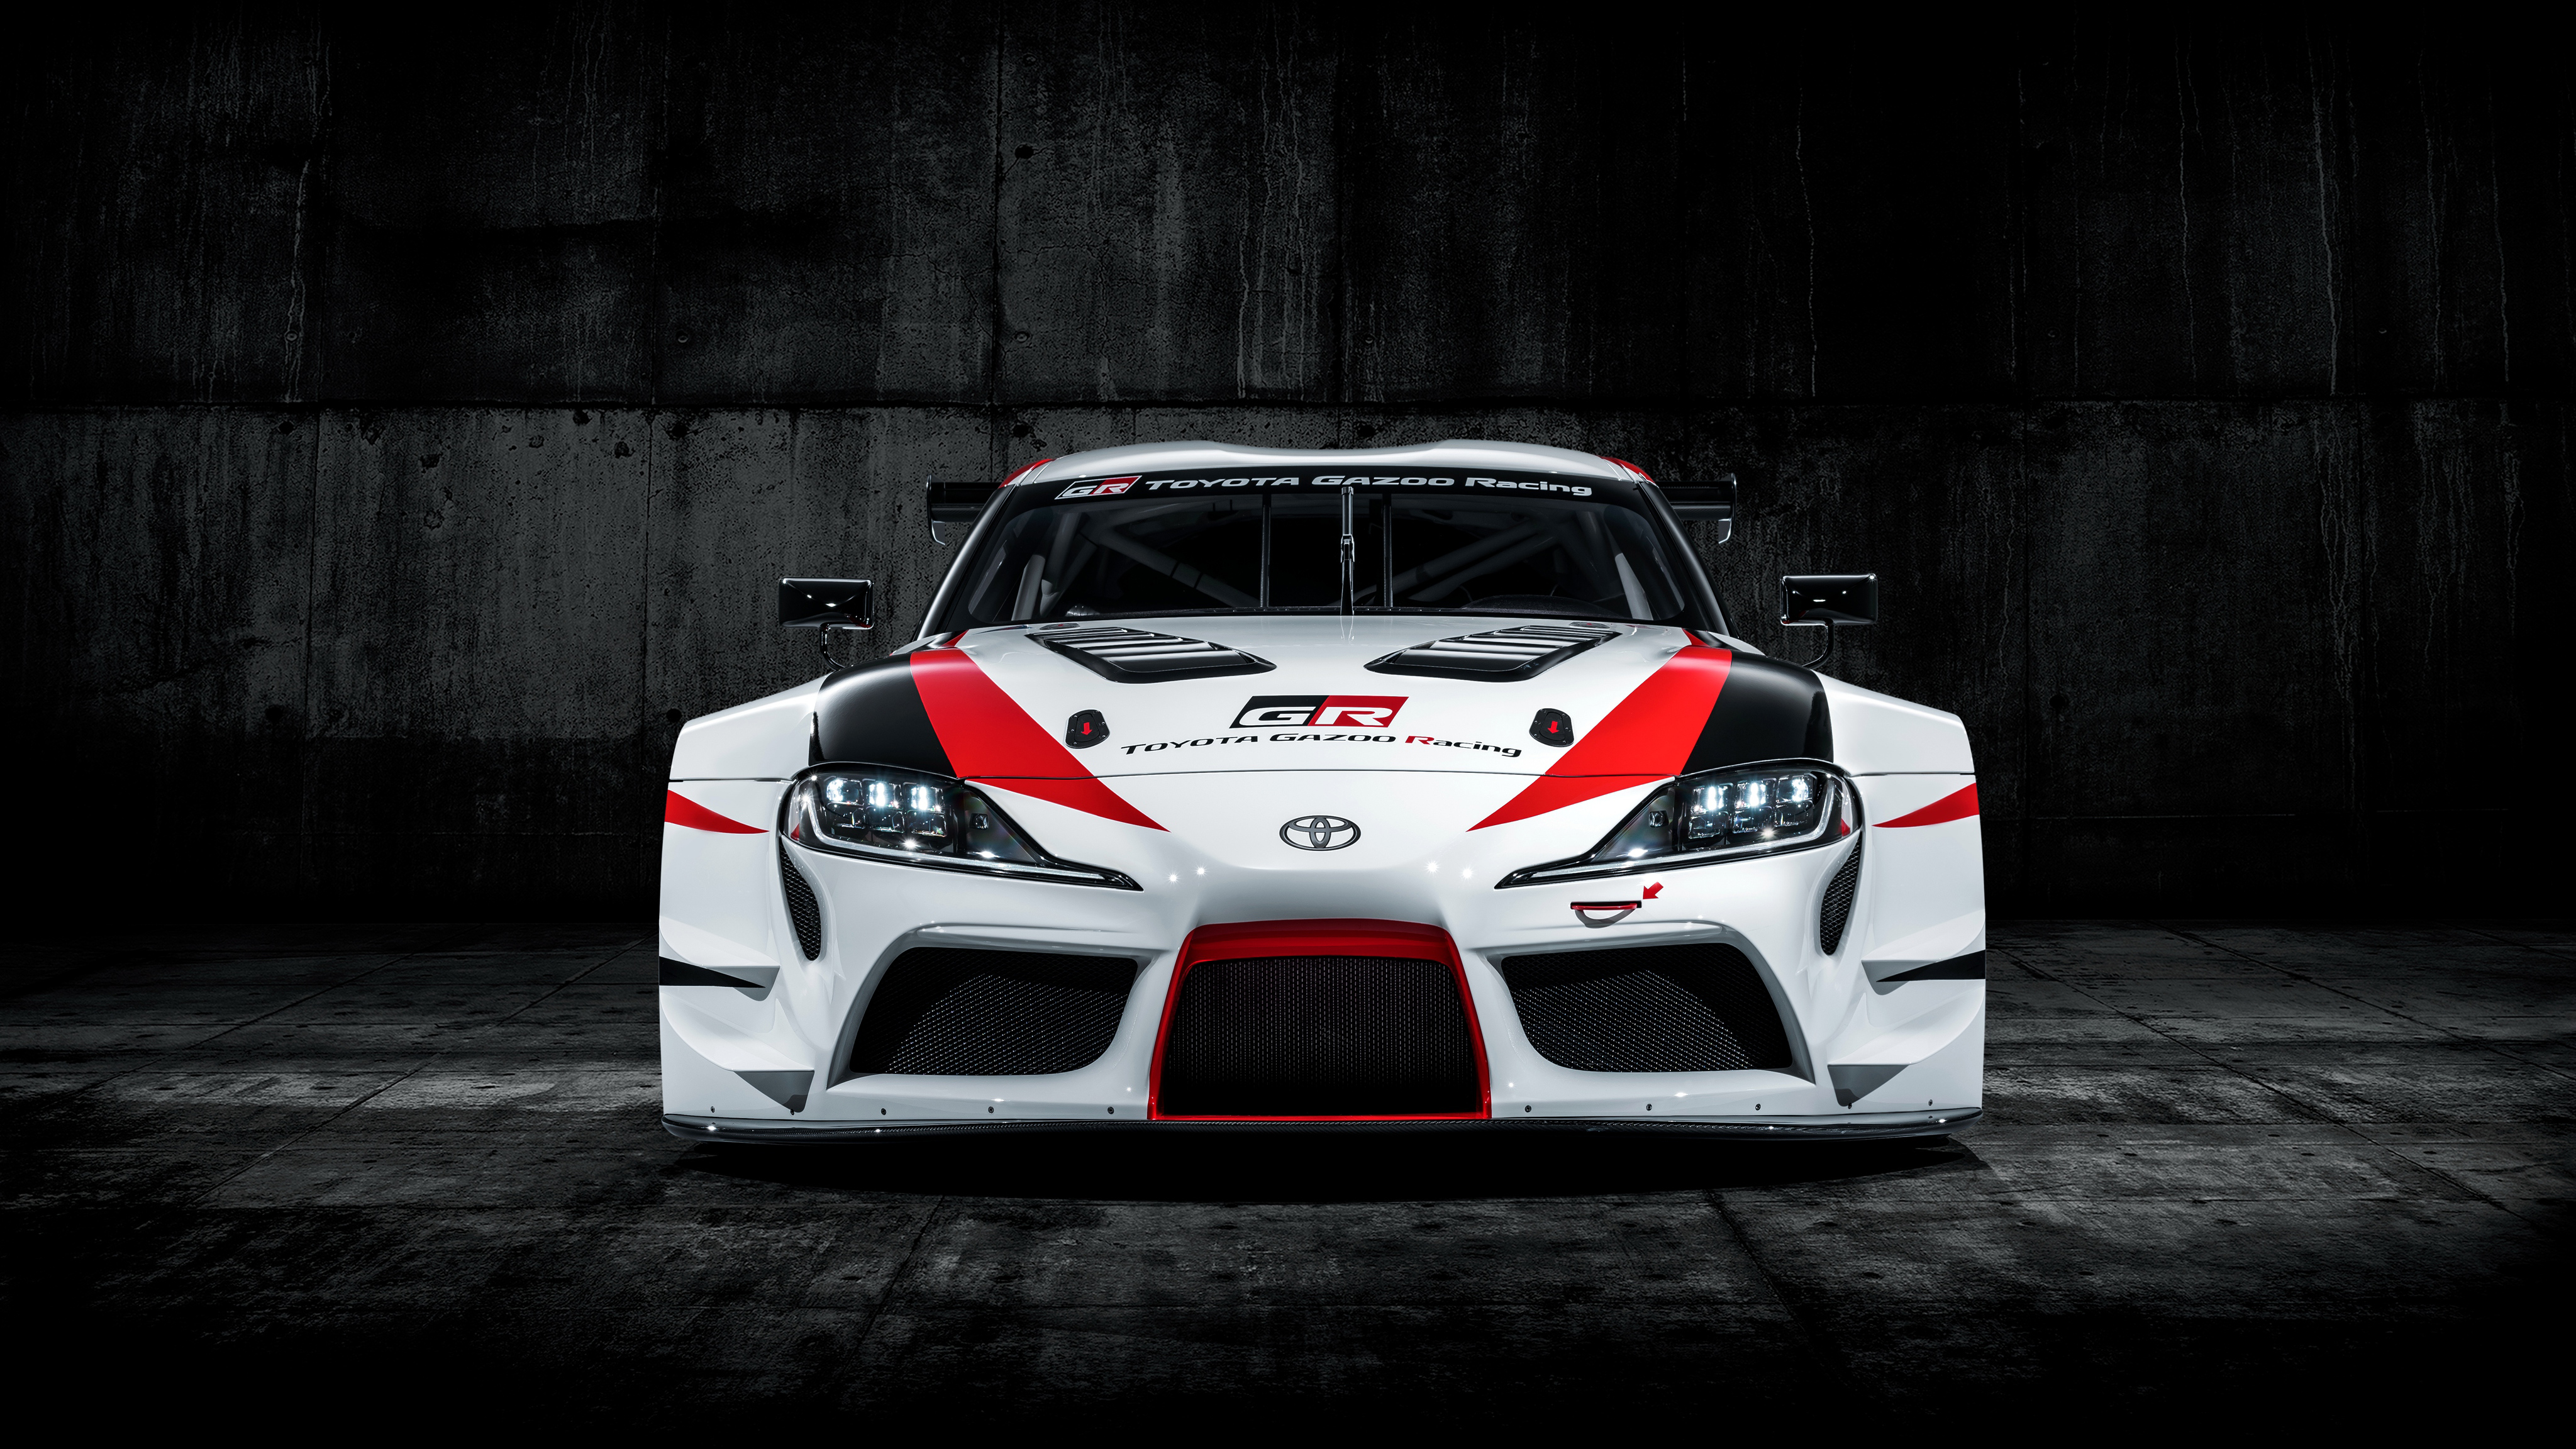 Toyota Supra Gt4 Racing Concept - HD Wallpaper 